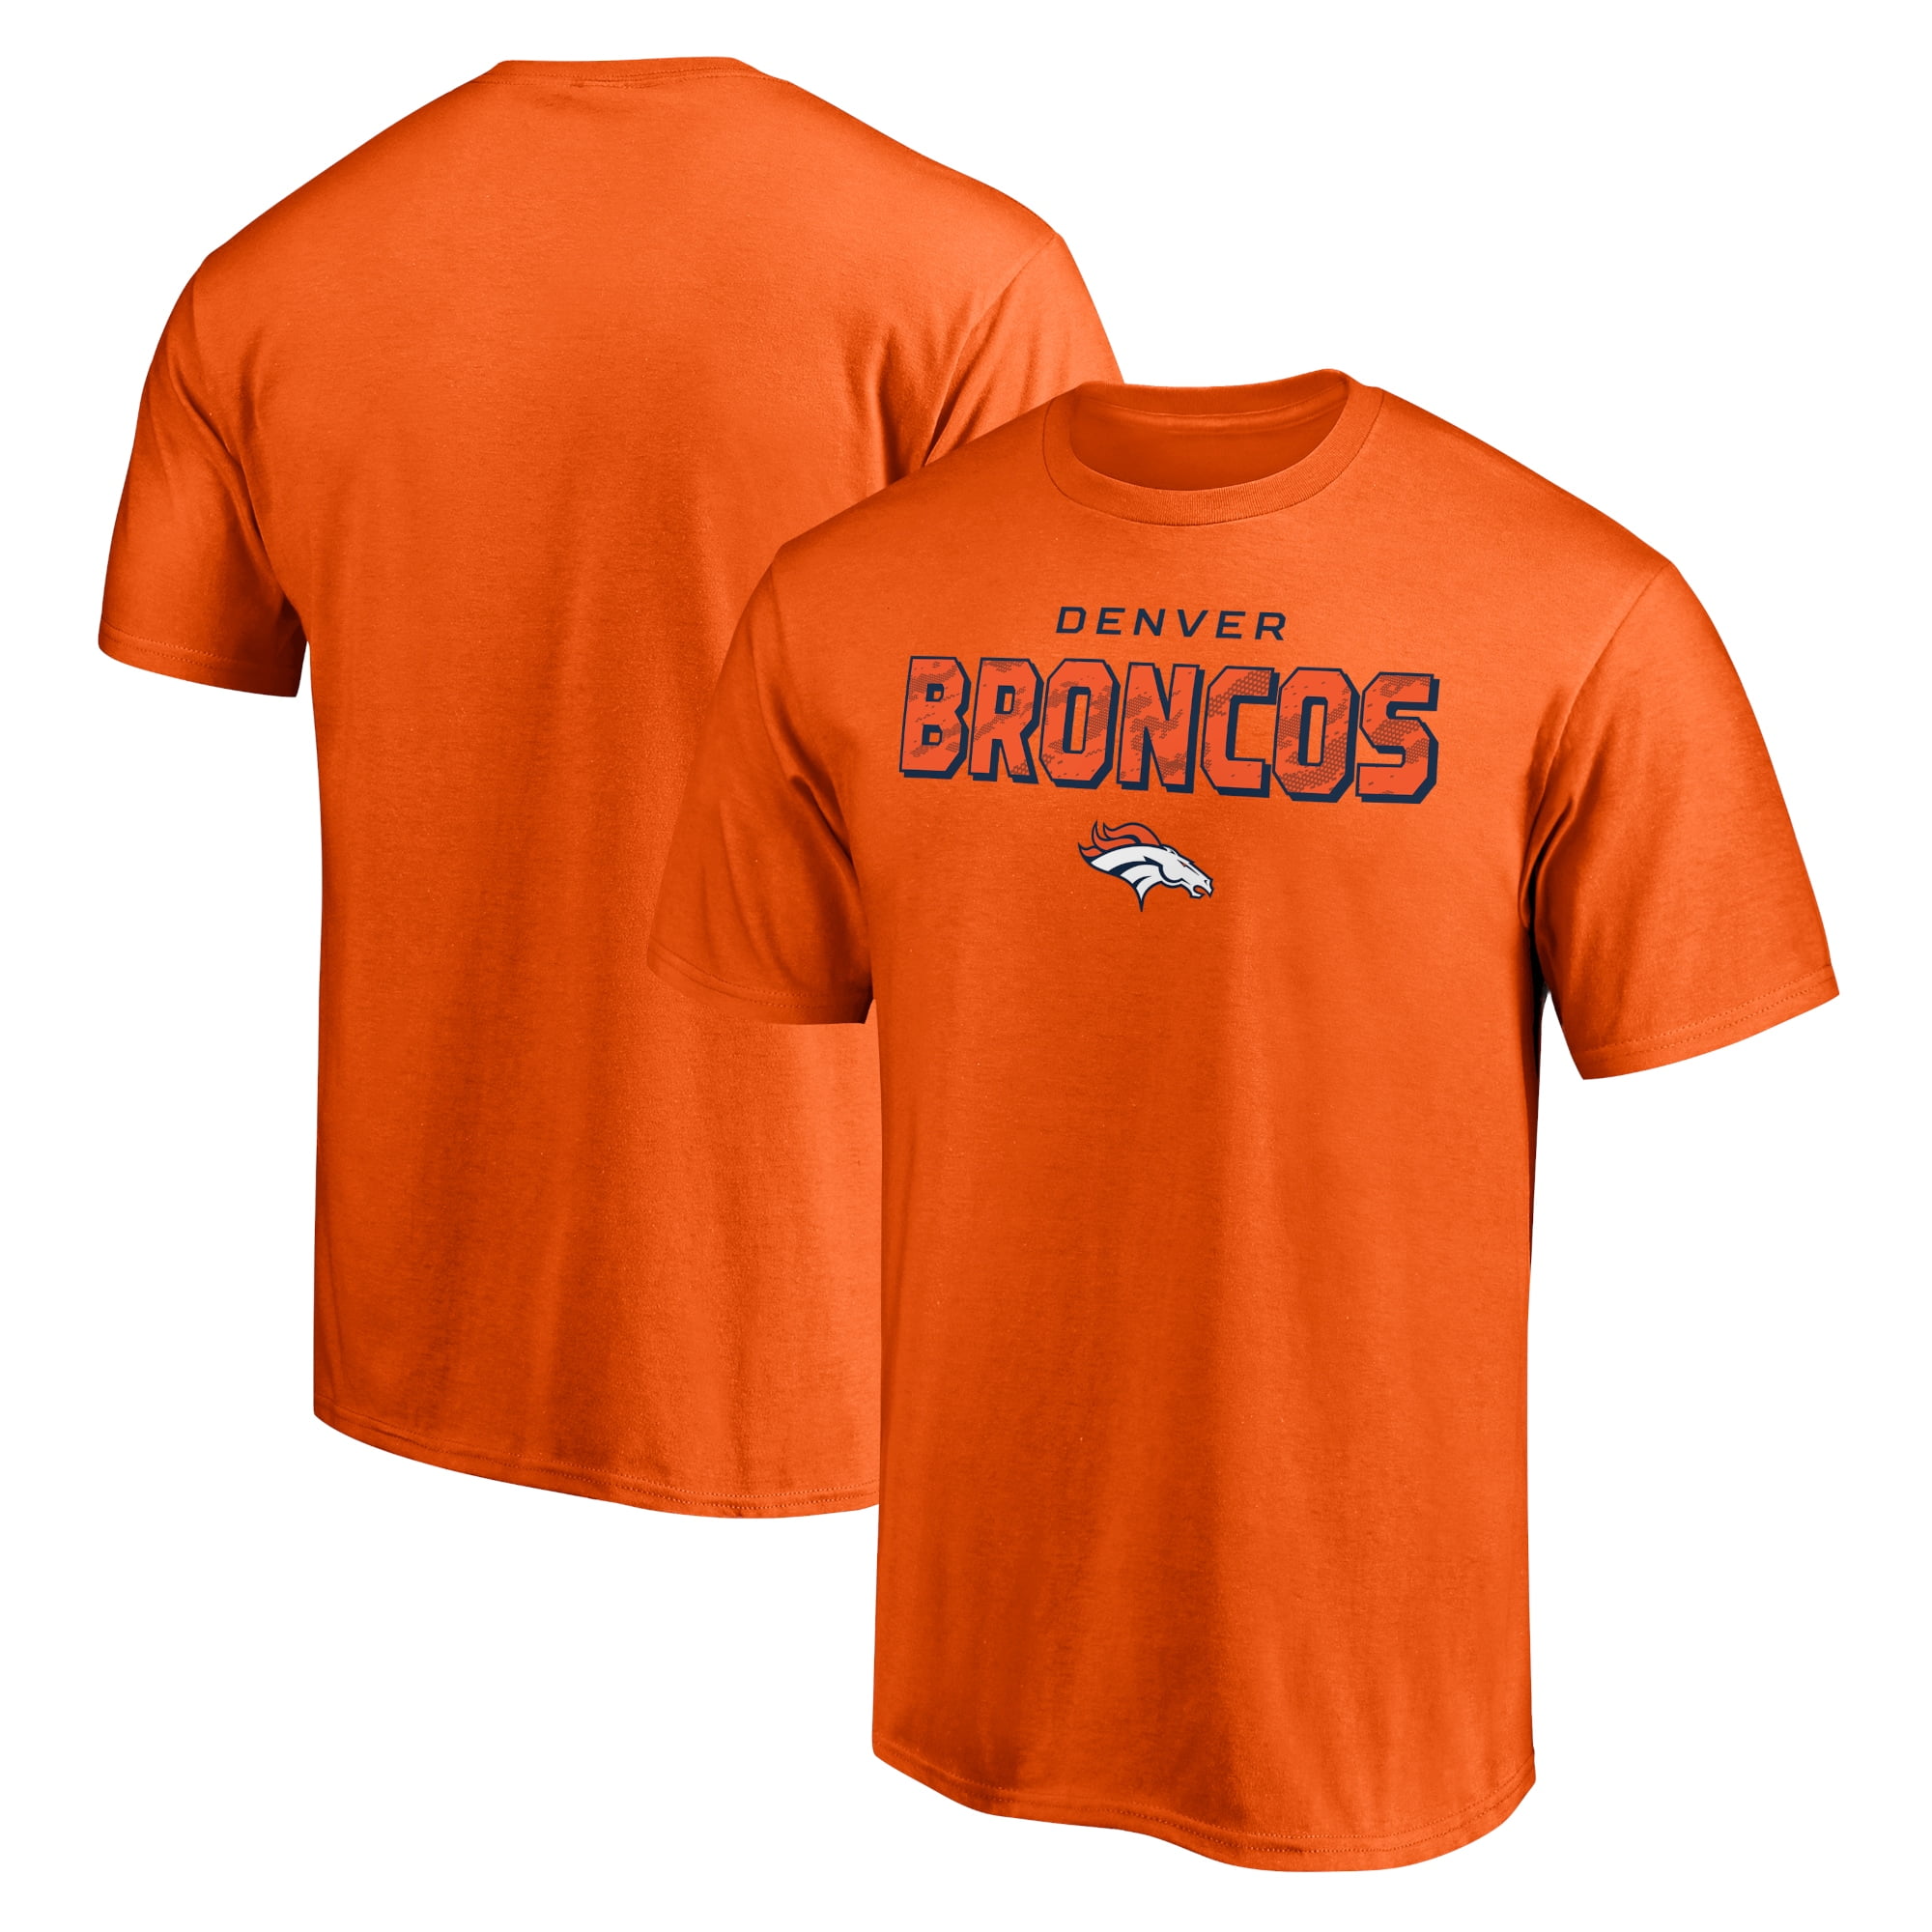 Denver Broncos T-Shirt US Football Mens Short Sleeve Tee Training Tops 